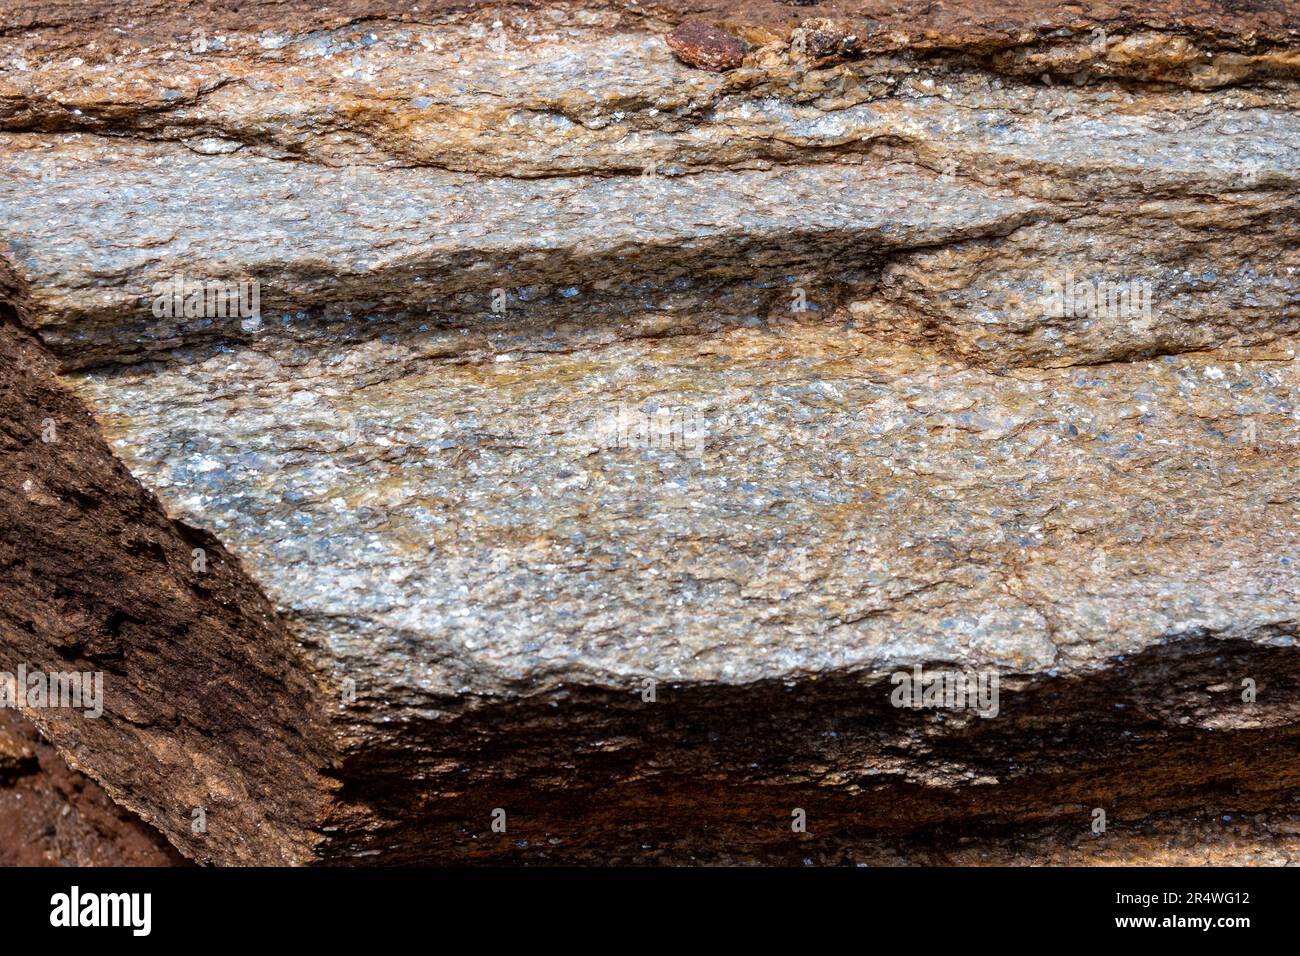 Felsvorsprung von Precambrian Mica Schist, einem metamorphen Felsen. Kenia, Afrika. Stockfoto